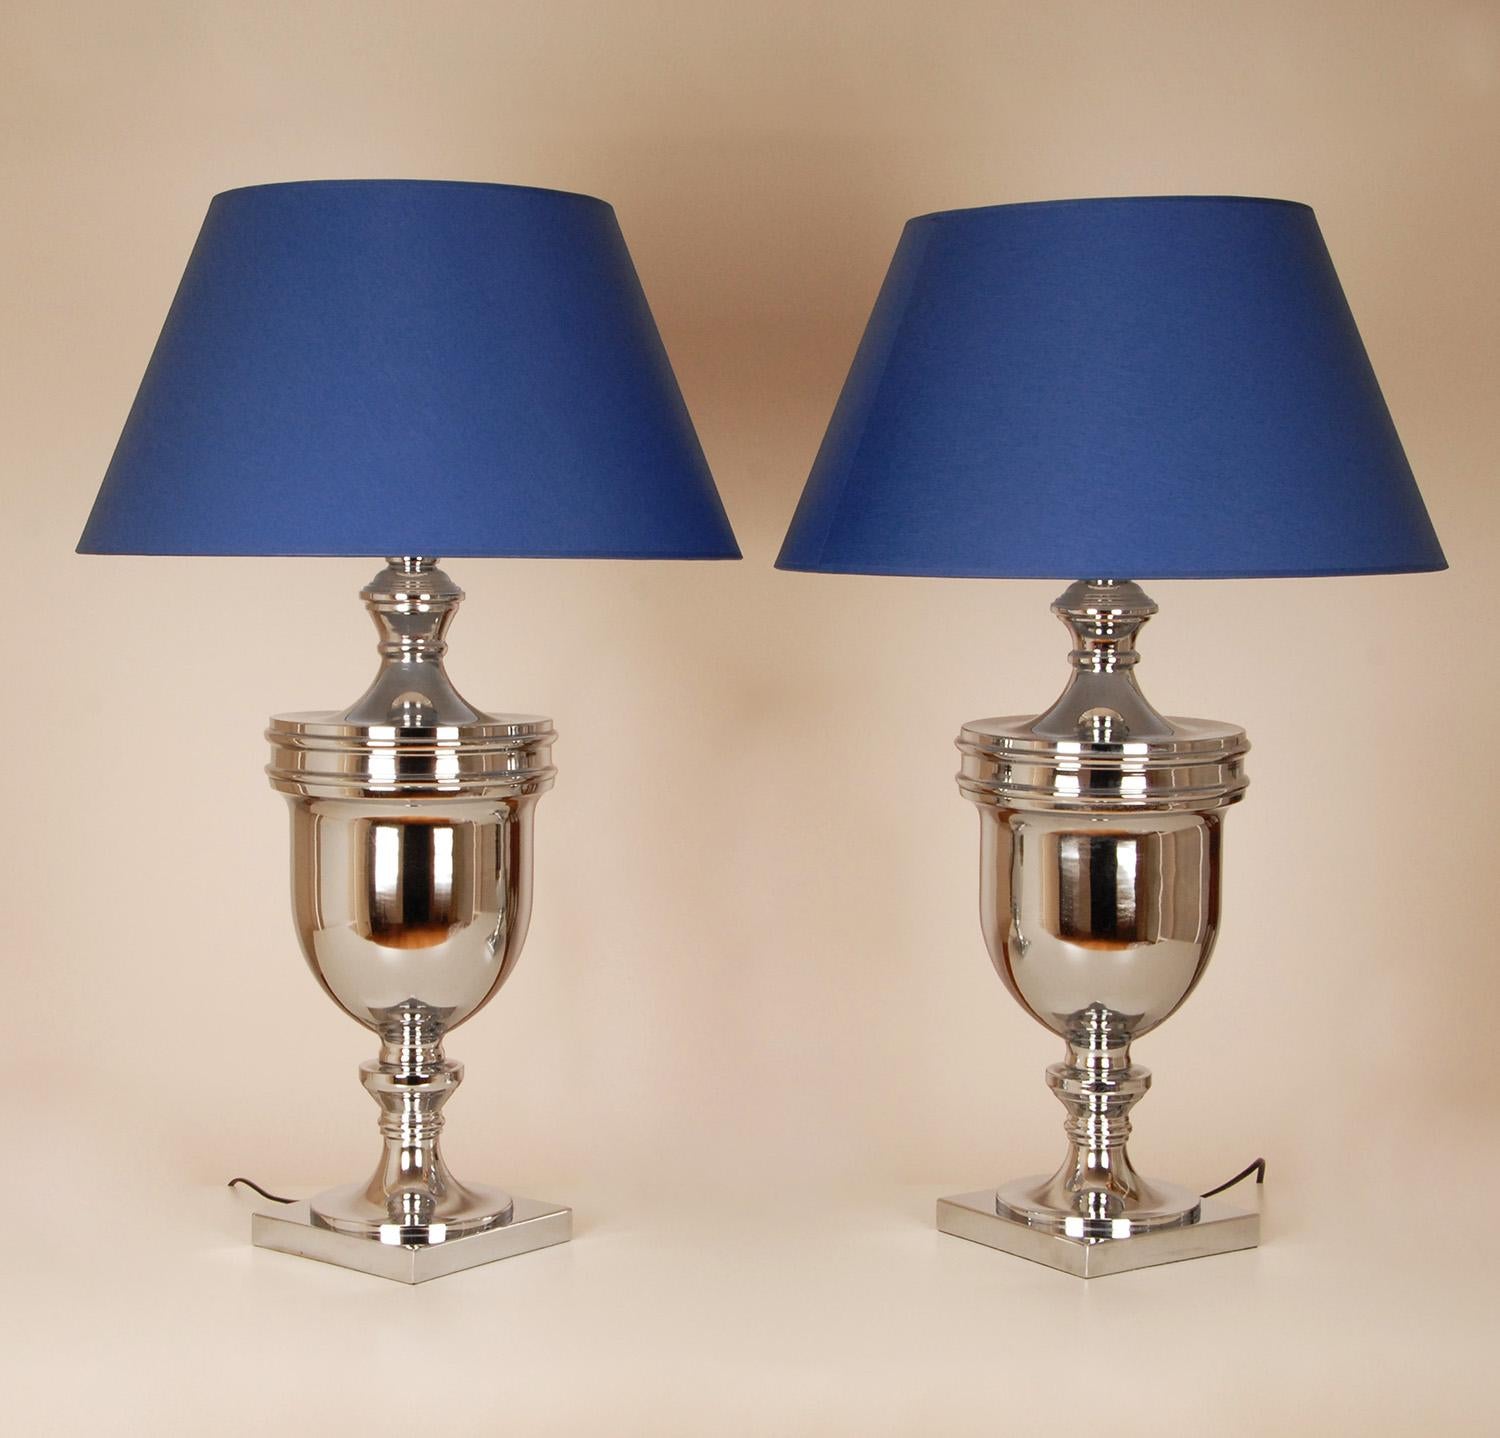 Tischlampen, Chrom, Silber, Königsblau, Moderne, hohe Tischlampen, Paar (Französisch)